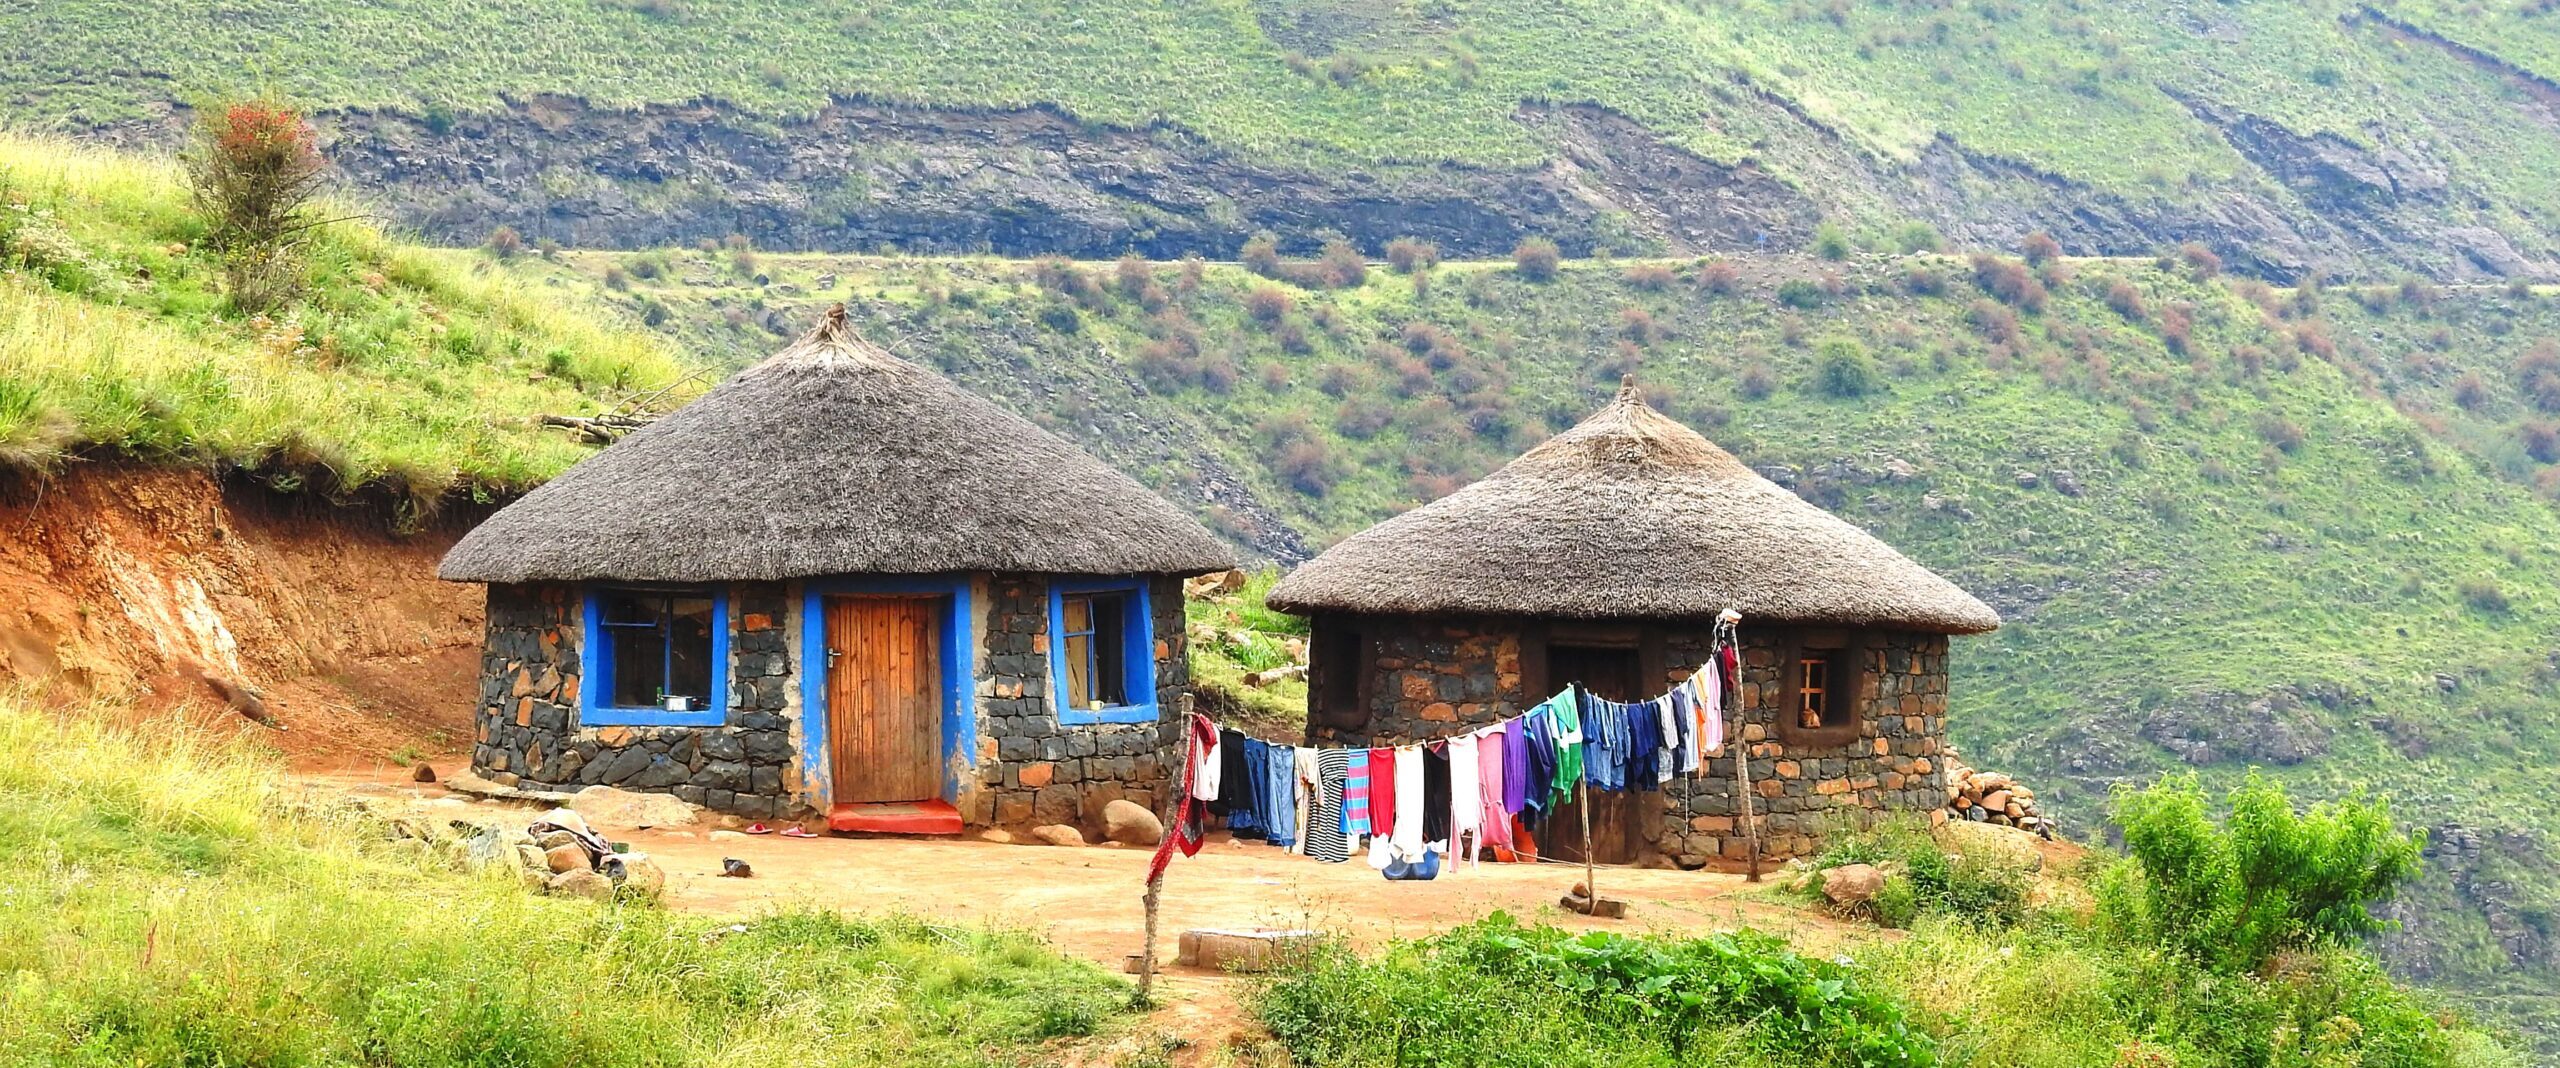 07 – Lesotho